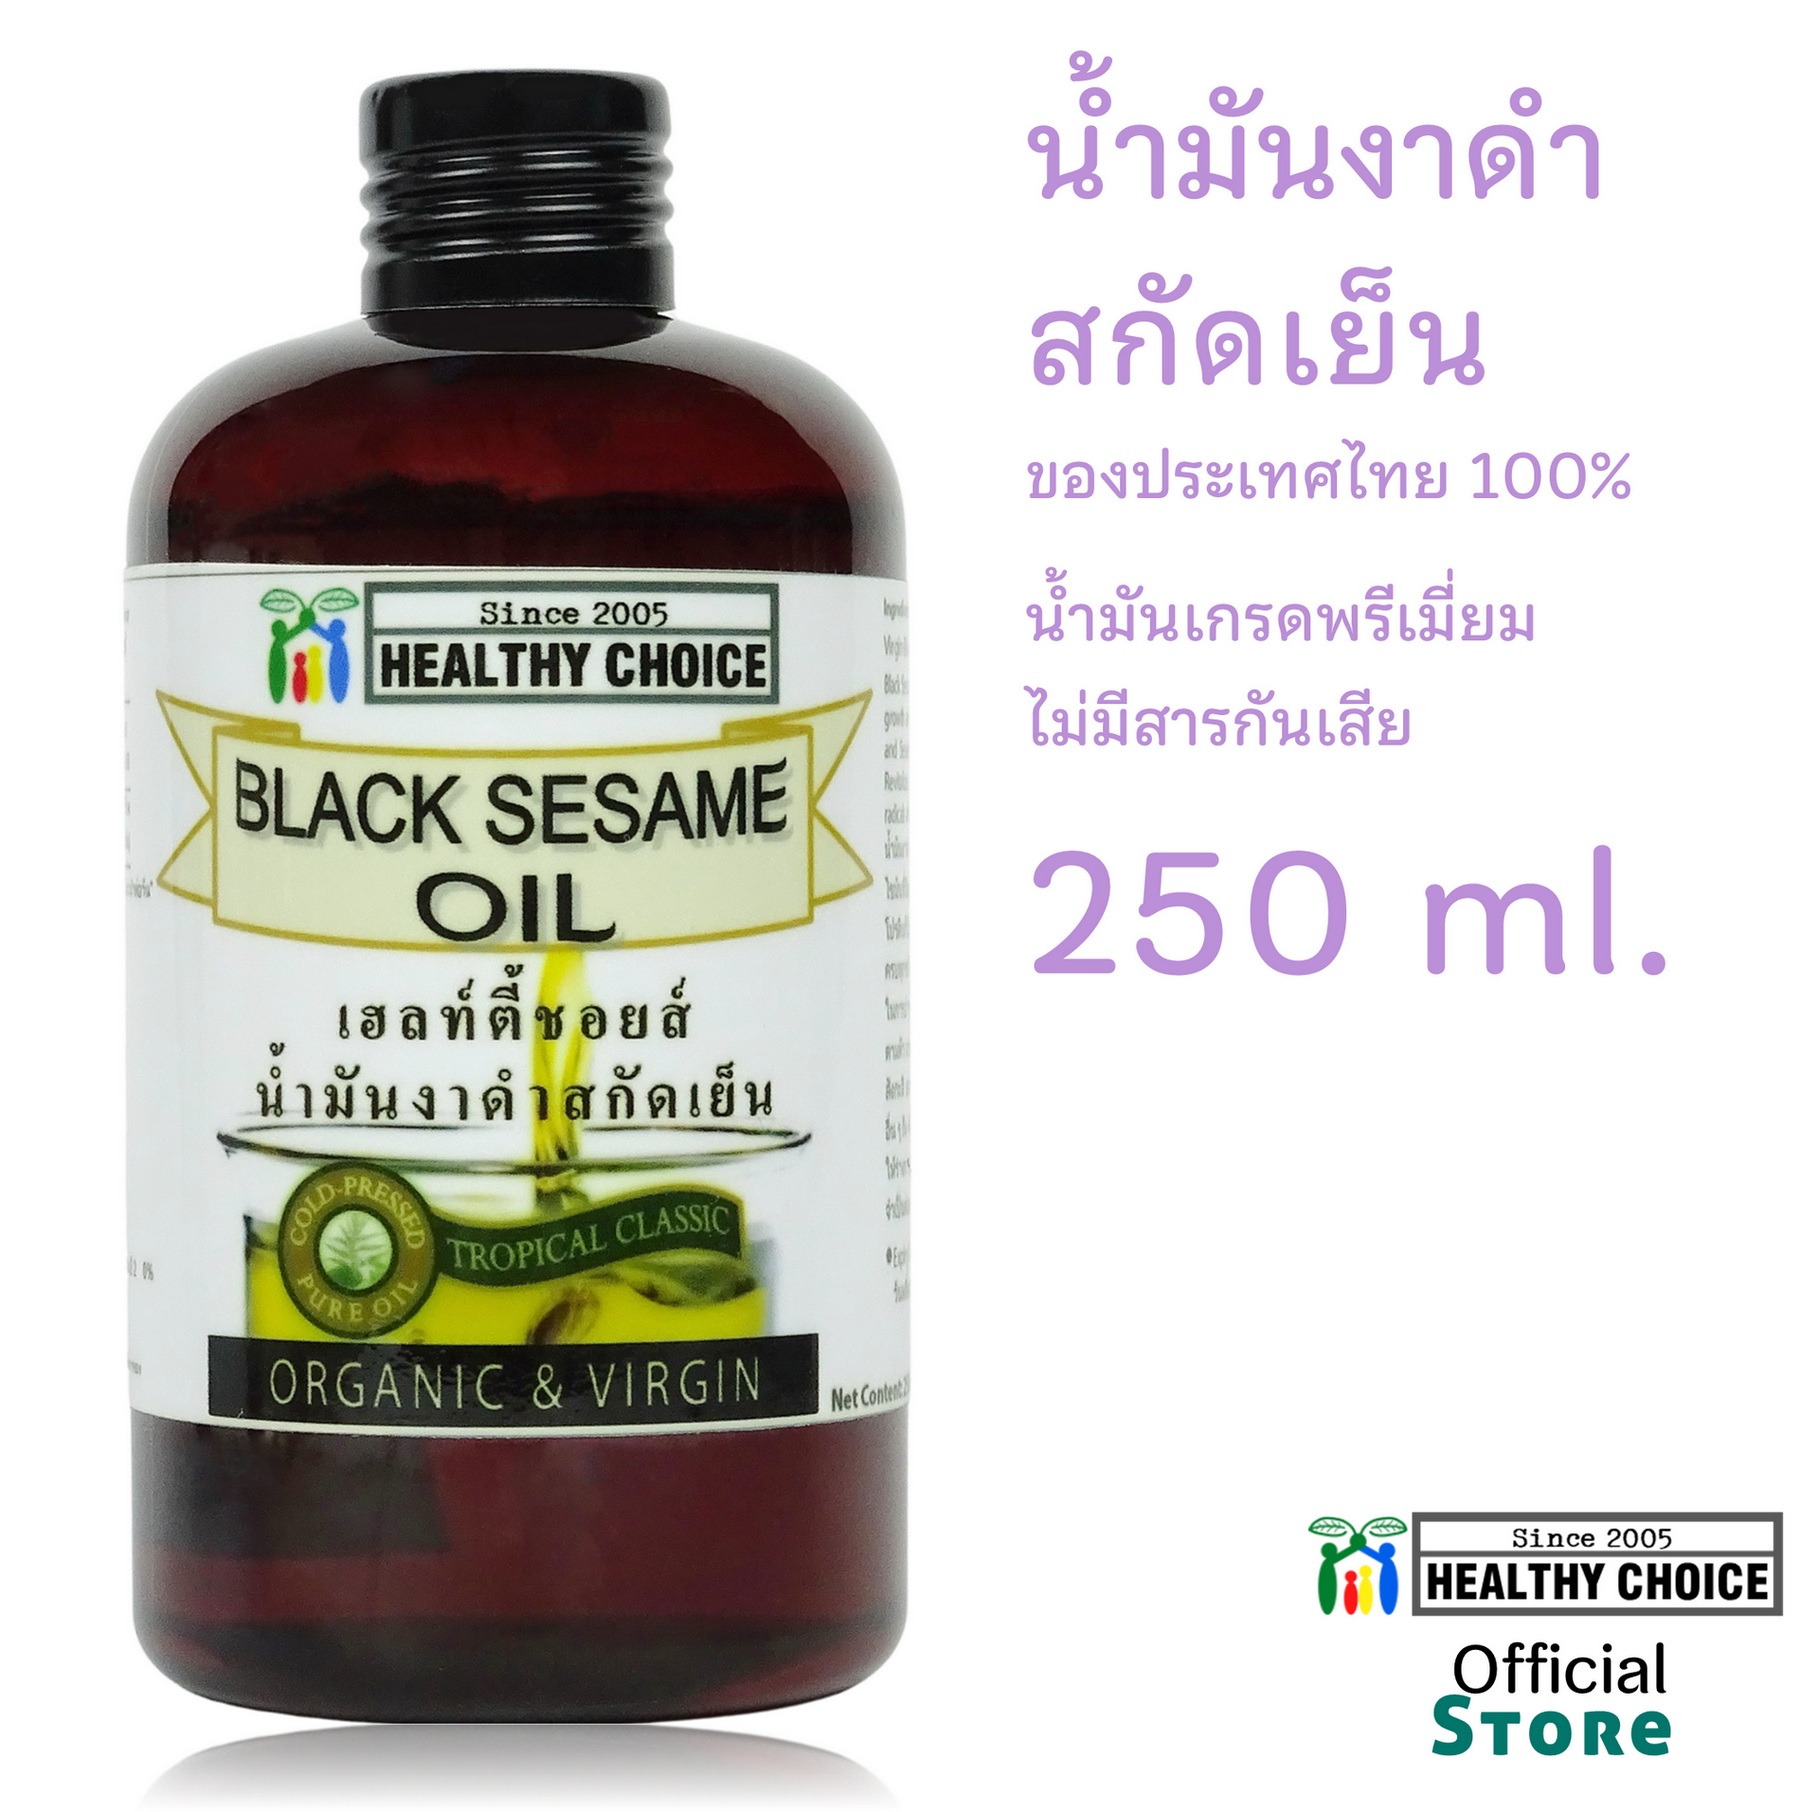 น้ำมันงาดำไทยสกัดเย็น เกษตรอินททรีย์ Healthy Choice 3 ขนาด 60/100/250 มล++ส่งฟรี  Healthy Choice Cold pressed Black Sesame Oil 60/100/250 ml++FREE Shipping 